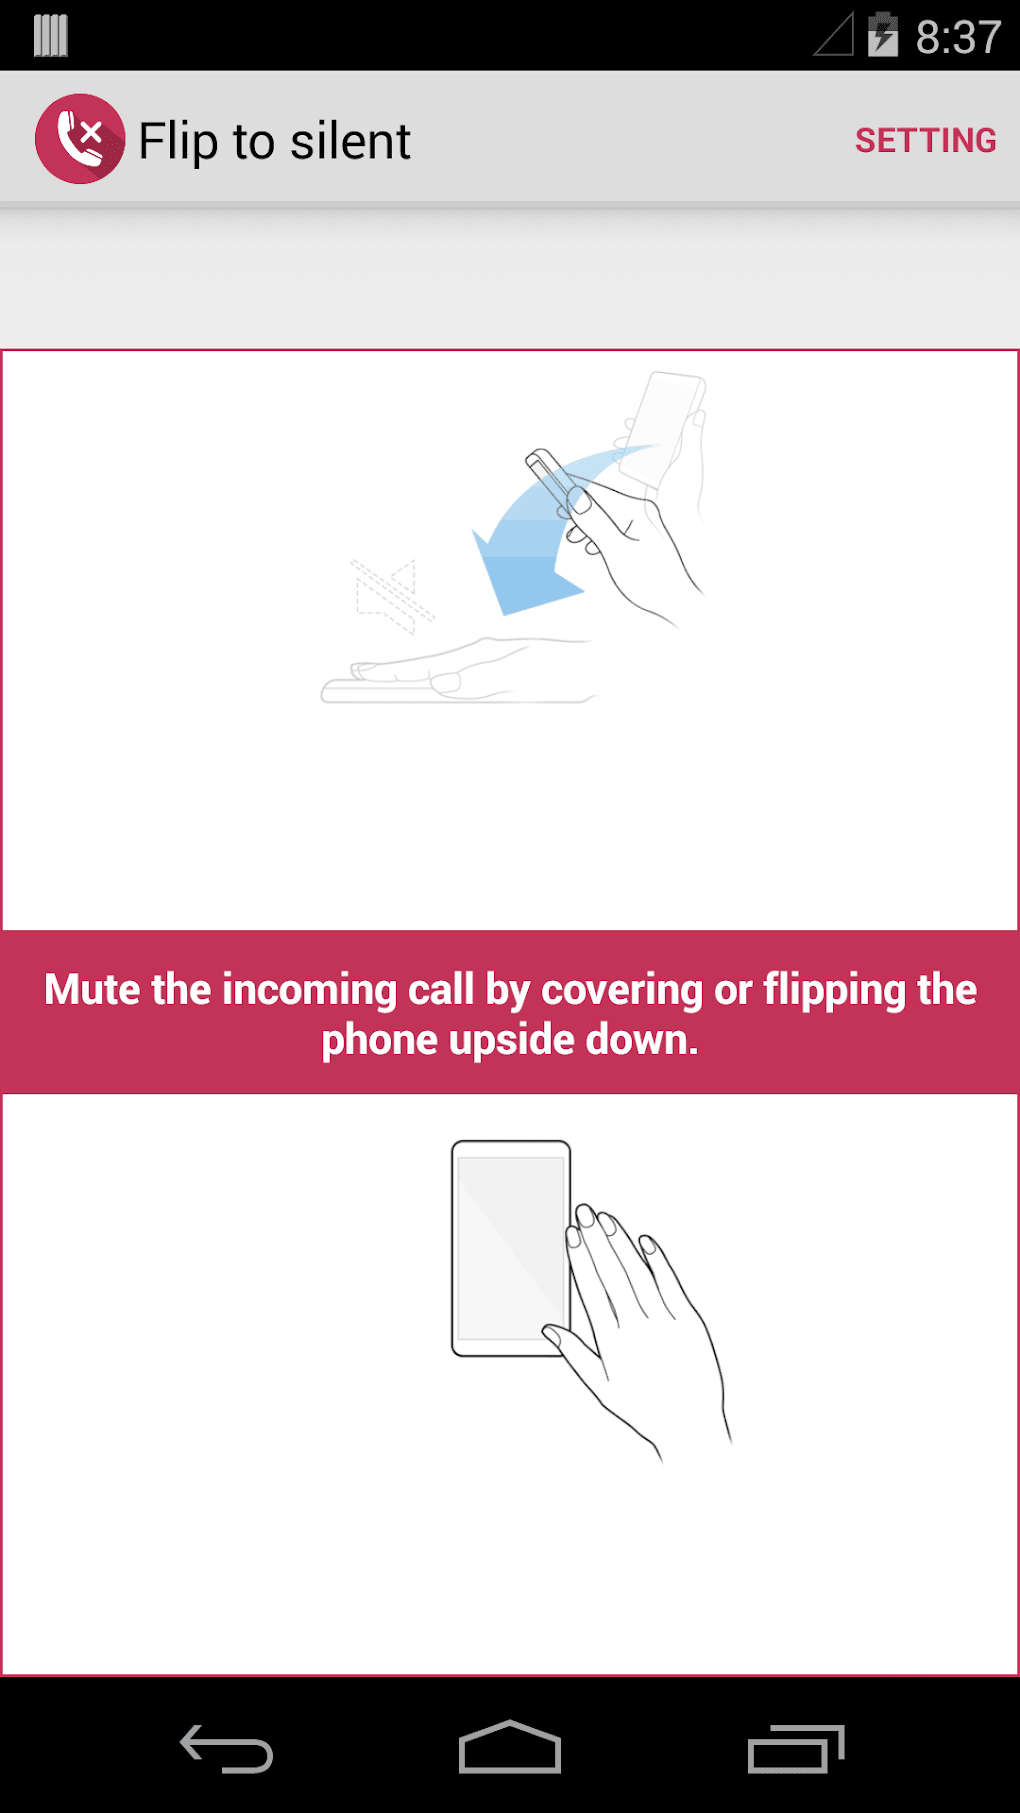 Flip приложение. Программа для флип чехла. Flip2silent что это за программа. Рисунки из приложения Flip clip. Как пользоваться приложением Flip Club.